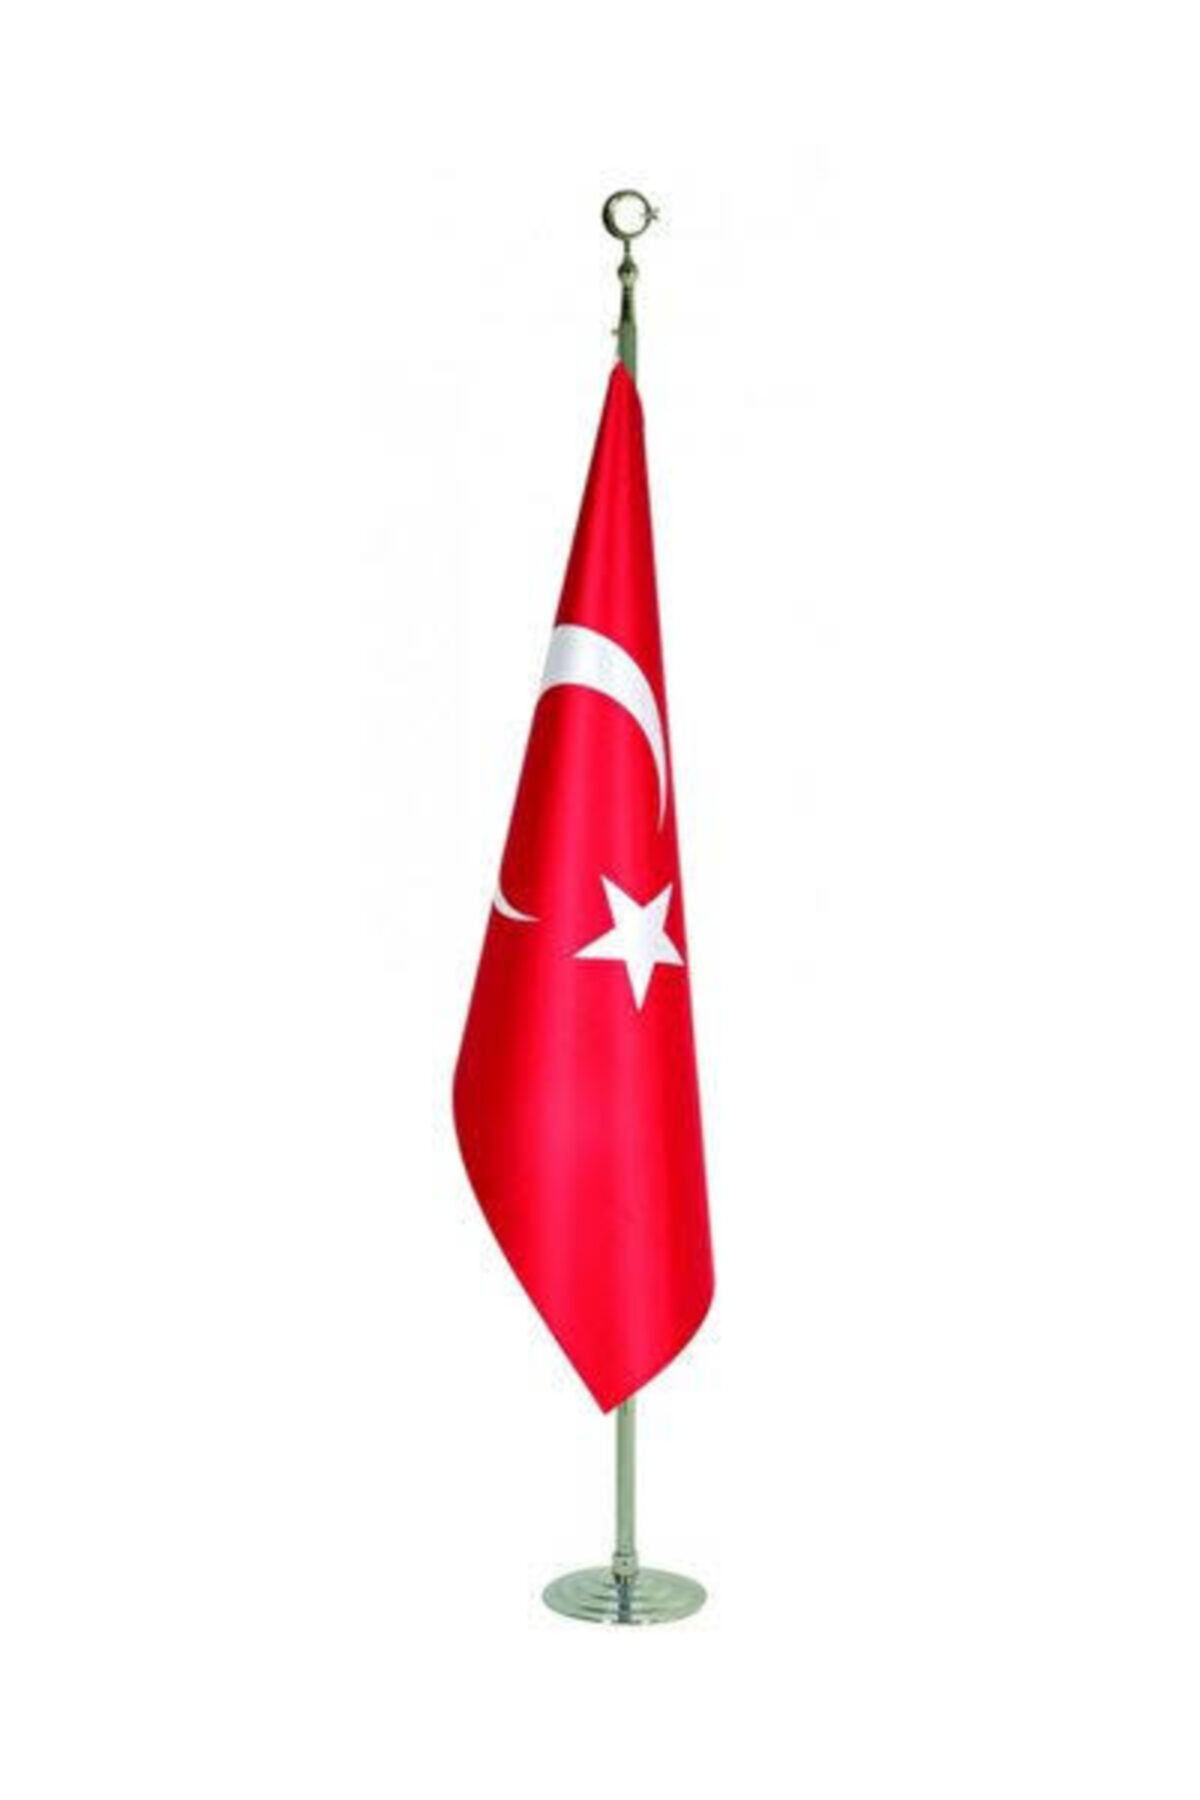 hazar bayrak Makam Türk Bayrağı 100x150cm Krom Direkli